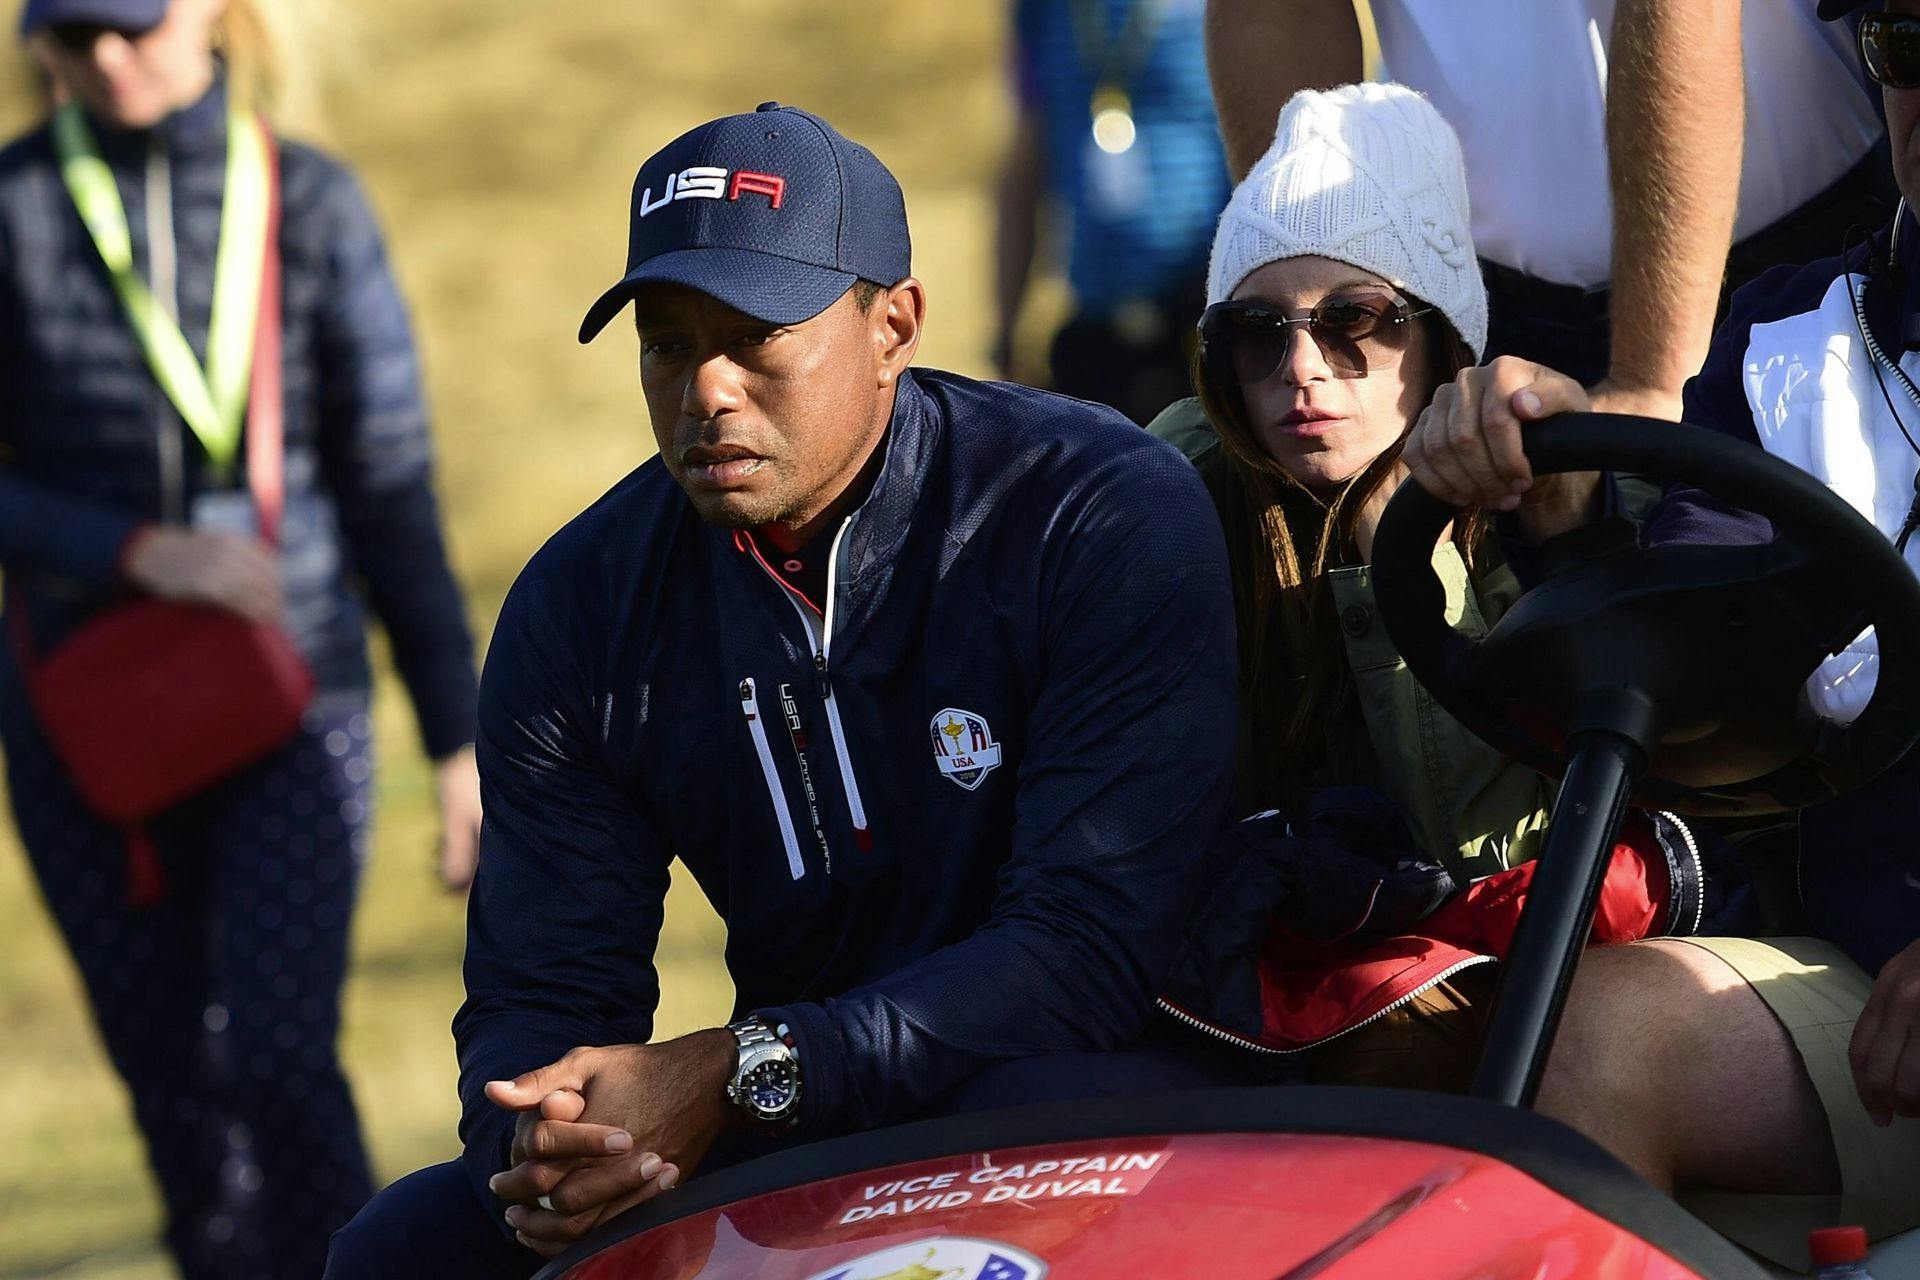 Dramaet fortsætter mellen Tiger Woods og hans ekskæreste, Erica Herman.